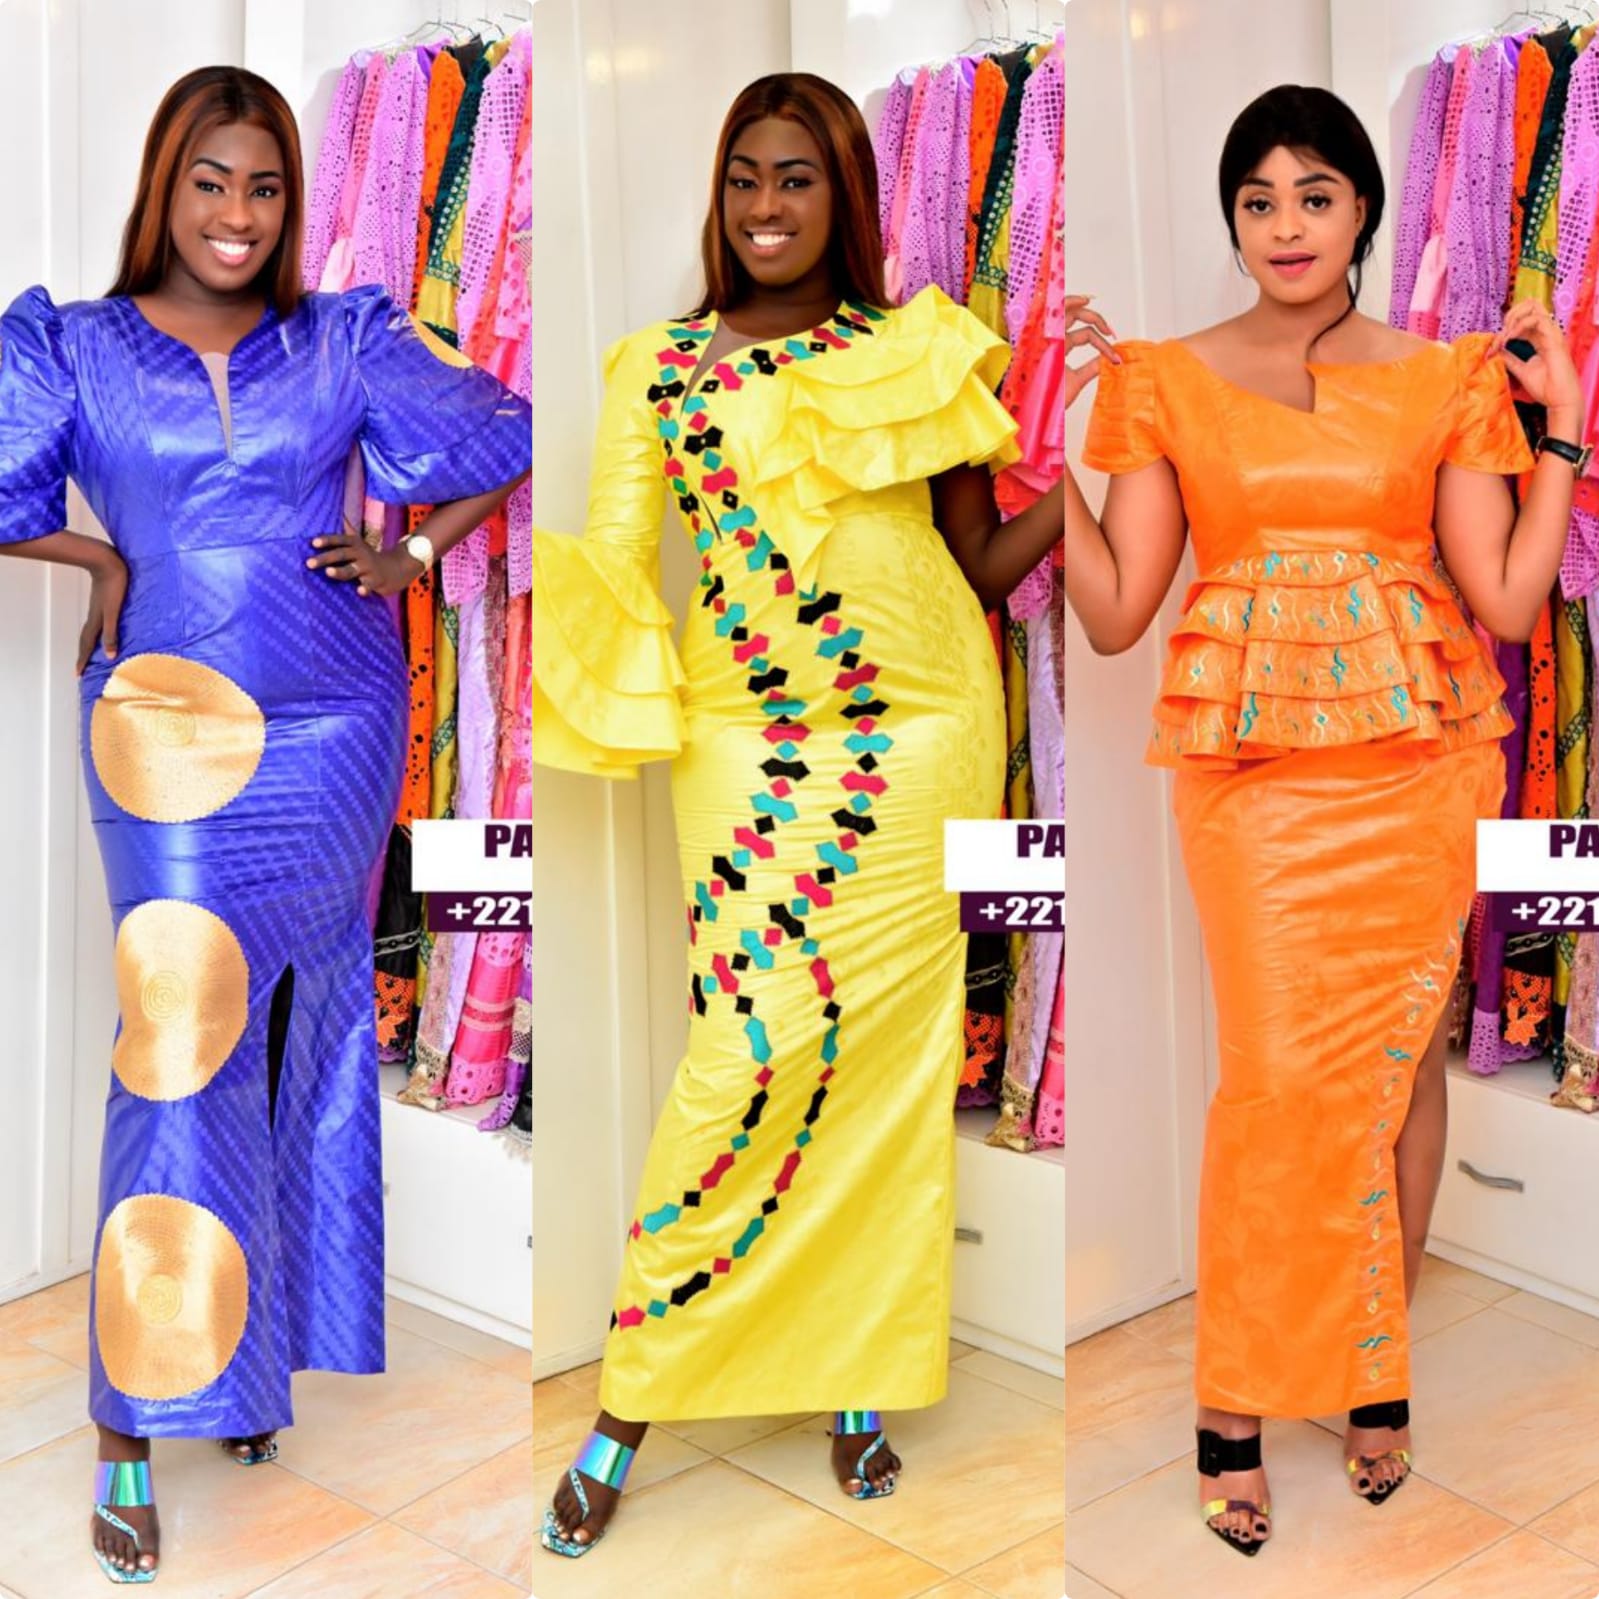 COLLECTION TABASKI: Bamaba Partenaire Couture ouvre le bal des Tendances les plus fashion pour 2020